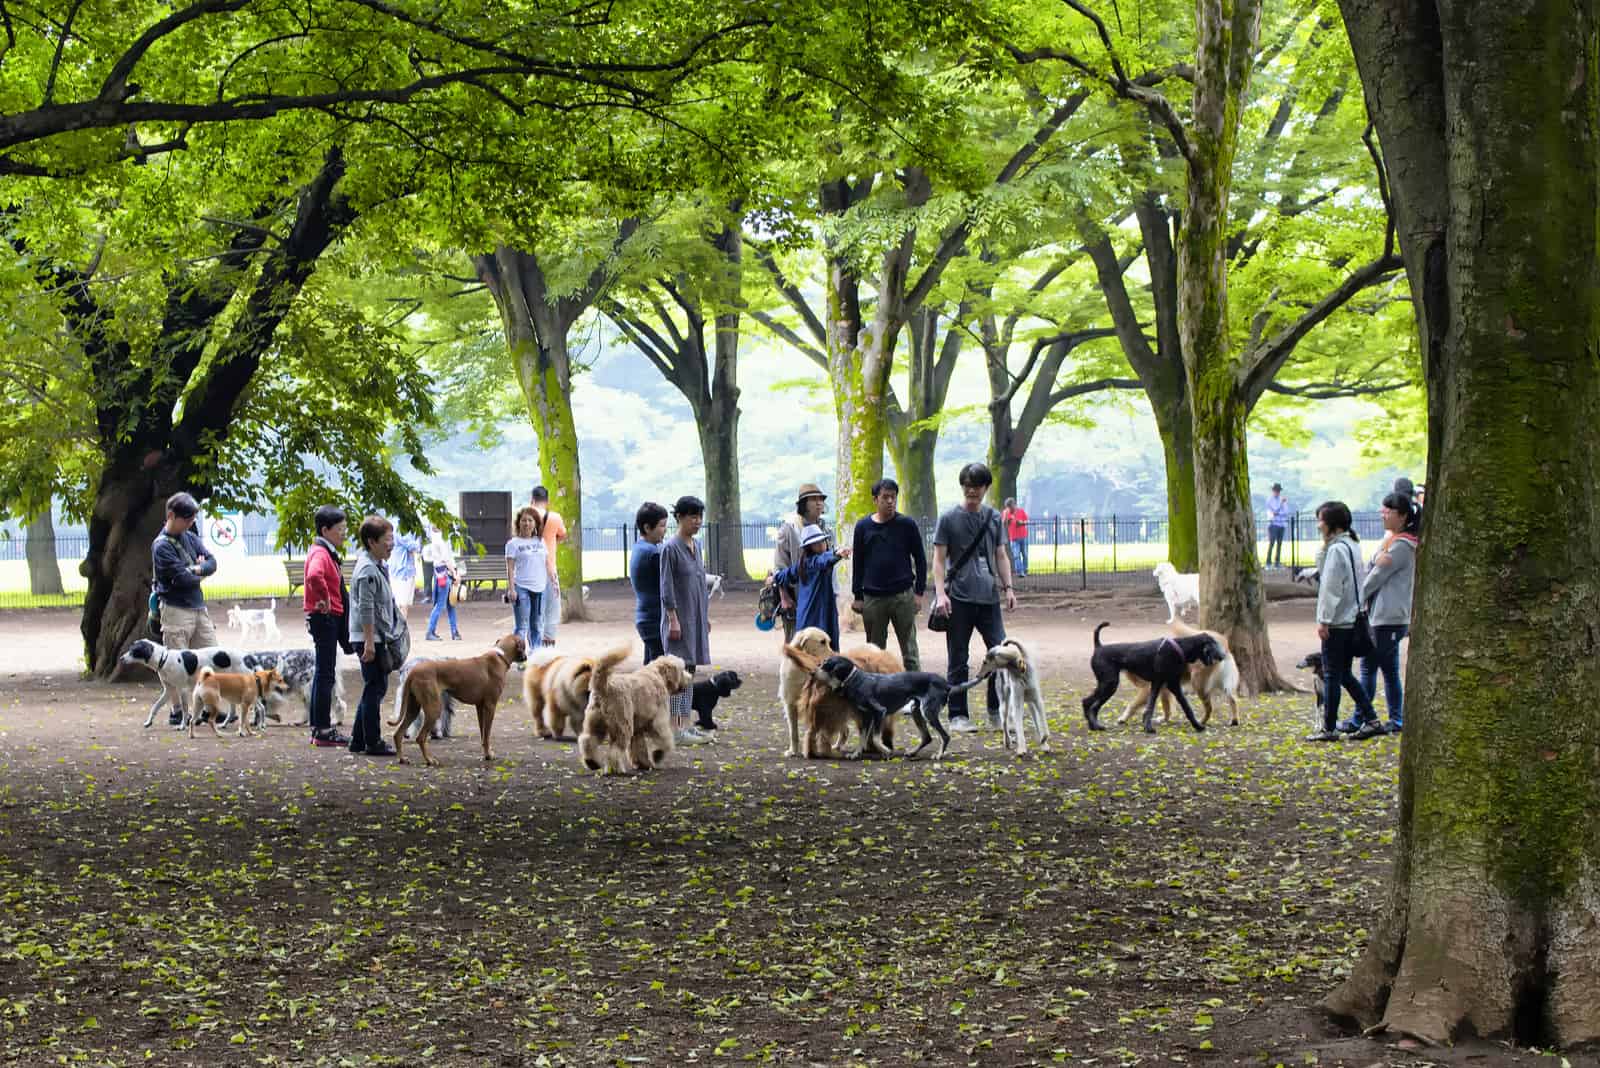 personnes se réunissent dans un parc à chiens